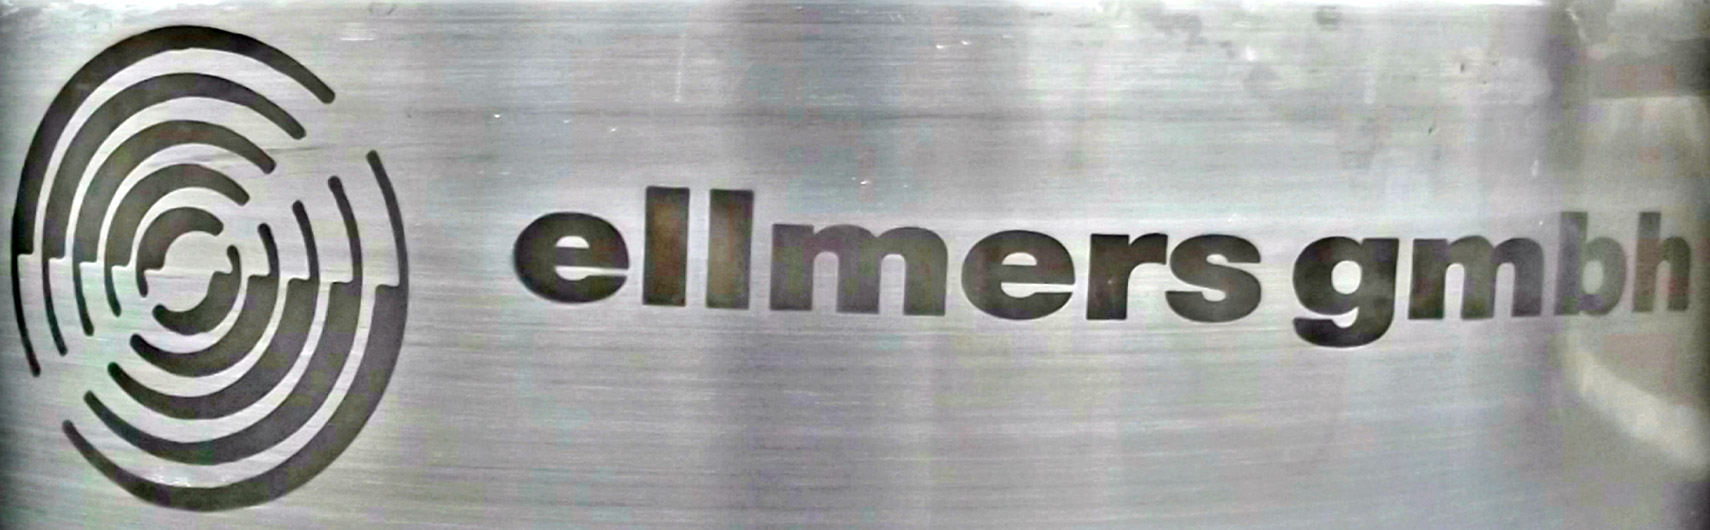 Mobiler Rebranding Service - ellmers GmbH - Mobiler Keg Reparaturservice